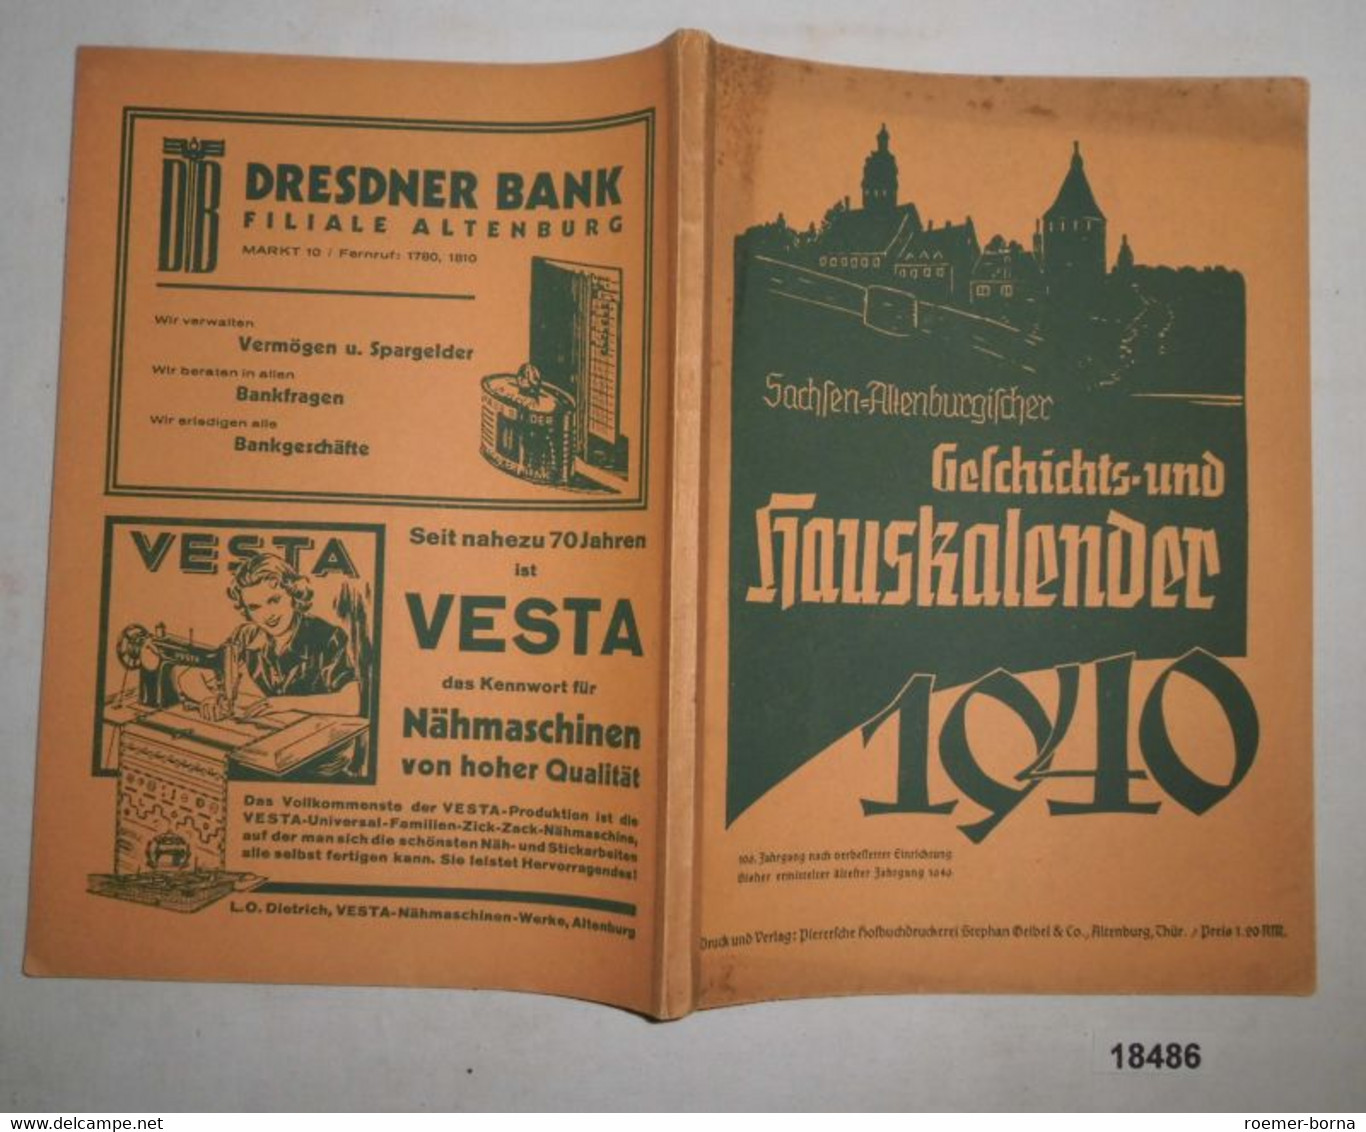 Sachsen-Altenburgischer Geschichts- Und Hauskalender 1940 - Kalender